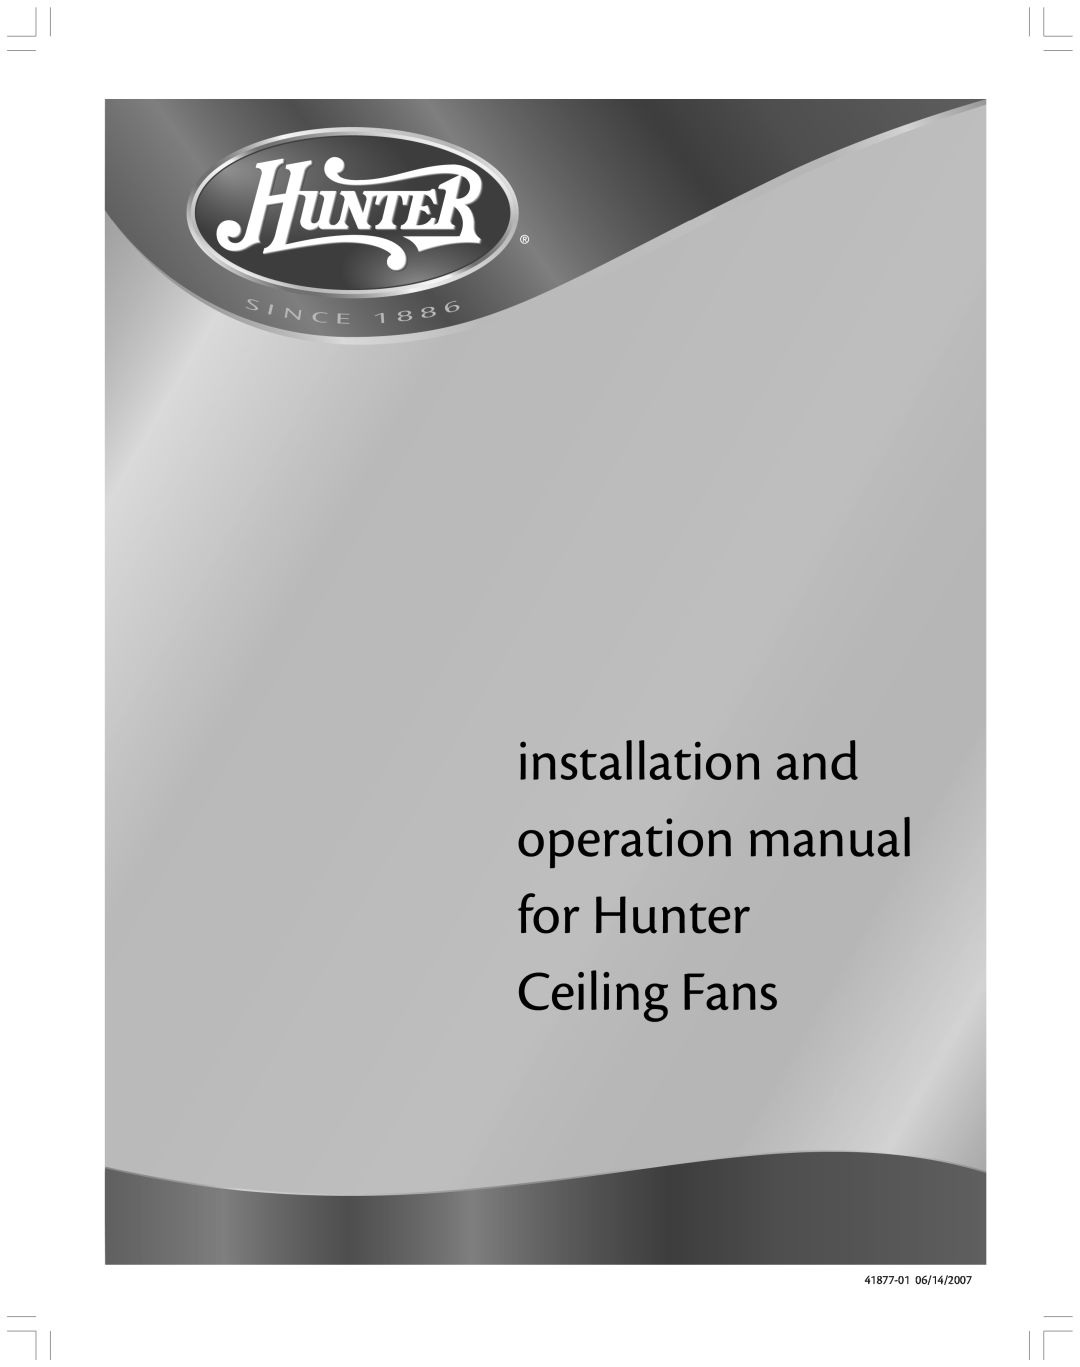 Hunter Fan manual Hunter Fan Company, 41877-0106/14/2007 